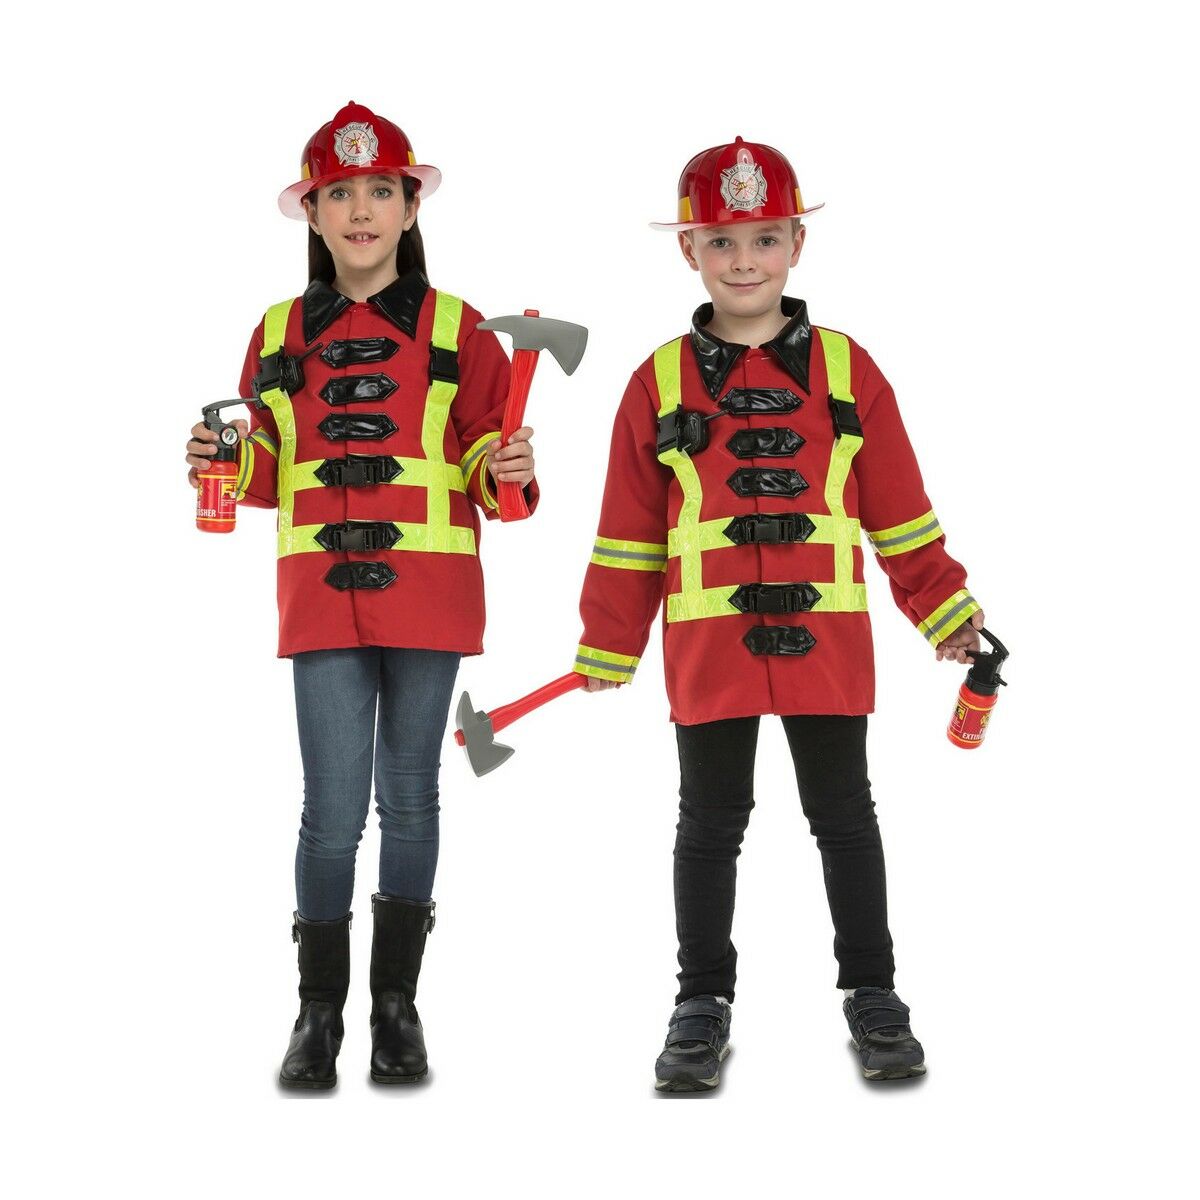 Verkleidung für Kinder My Other Me Feuerwehrmann 5-7 Jahre (5 Stücke)